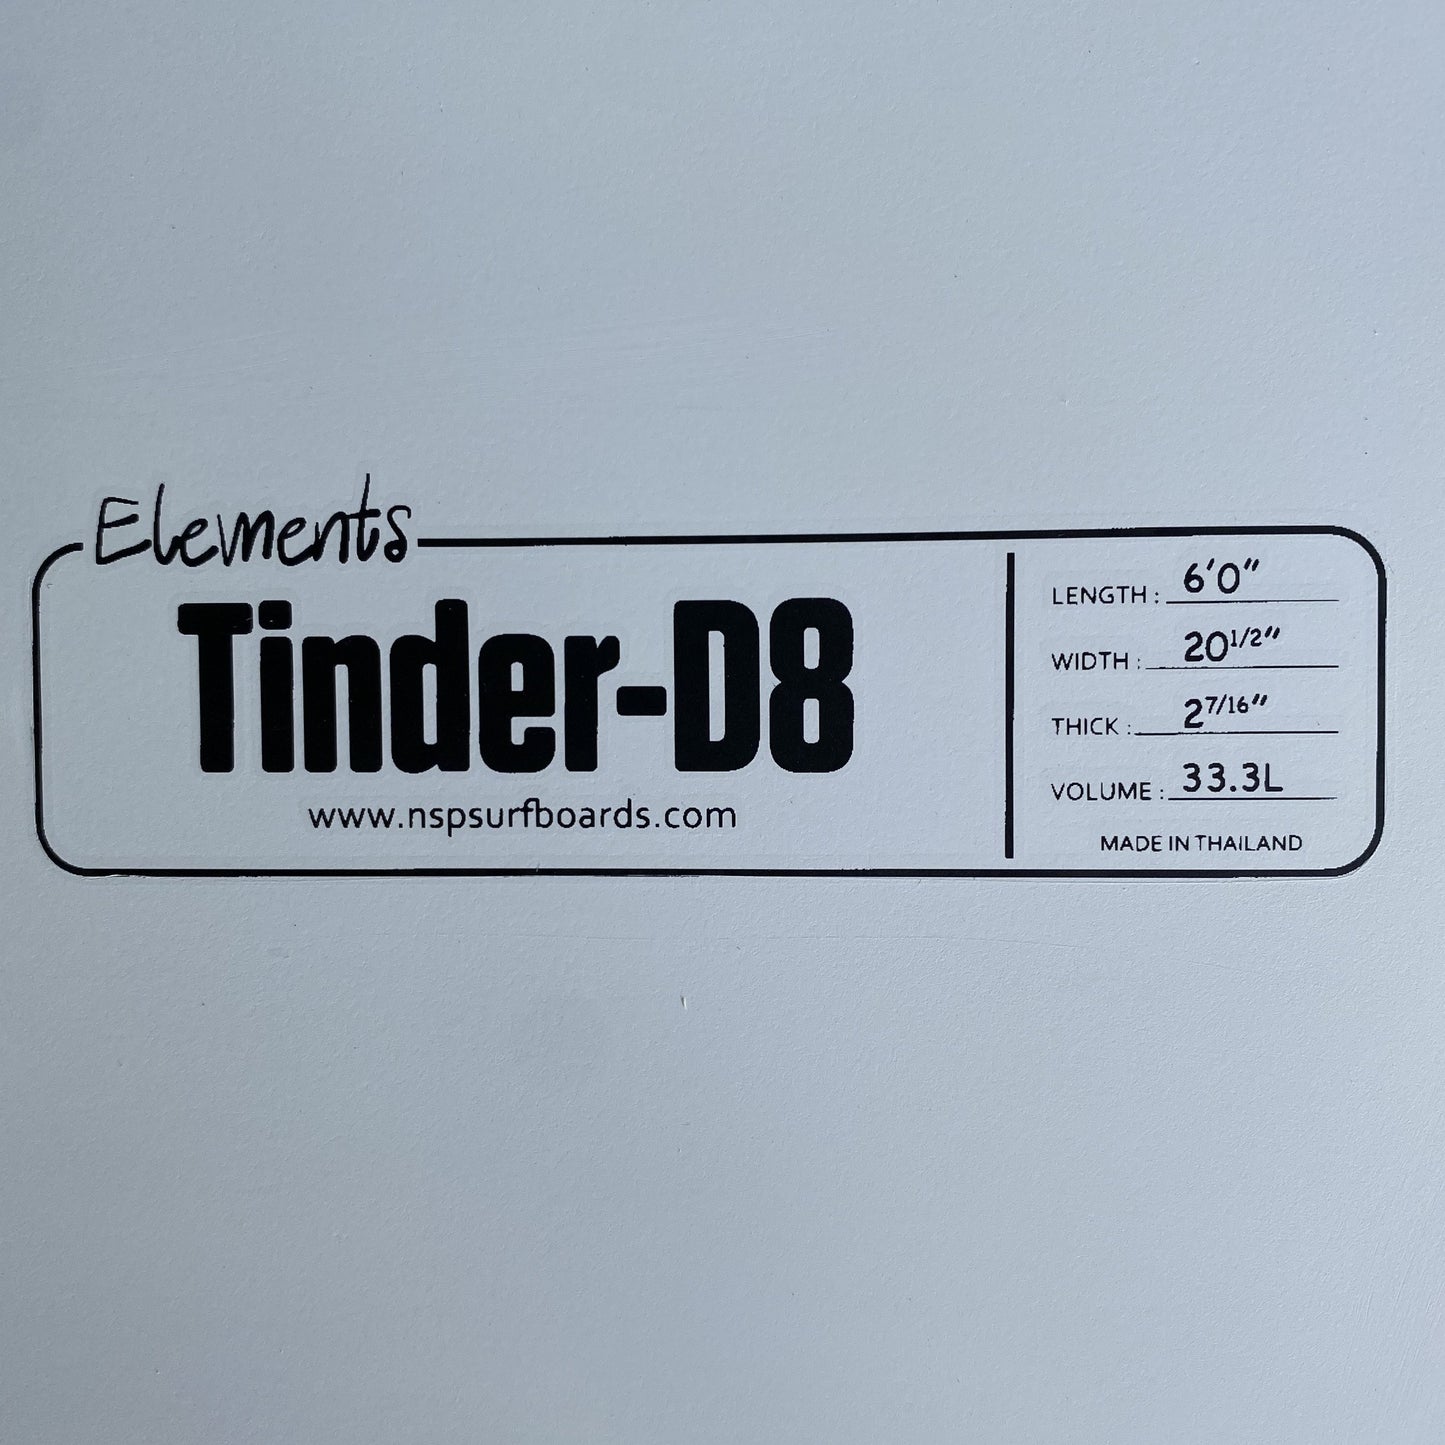 NSP ELEMENTS TINDER-D8 SURFBOARD 6'0"